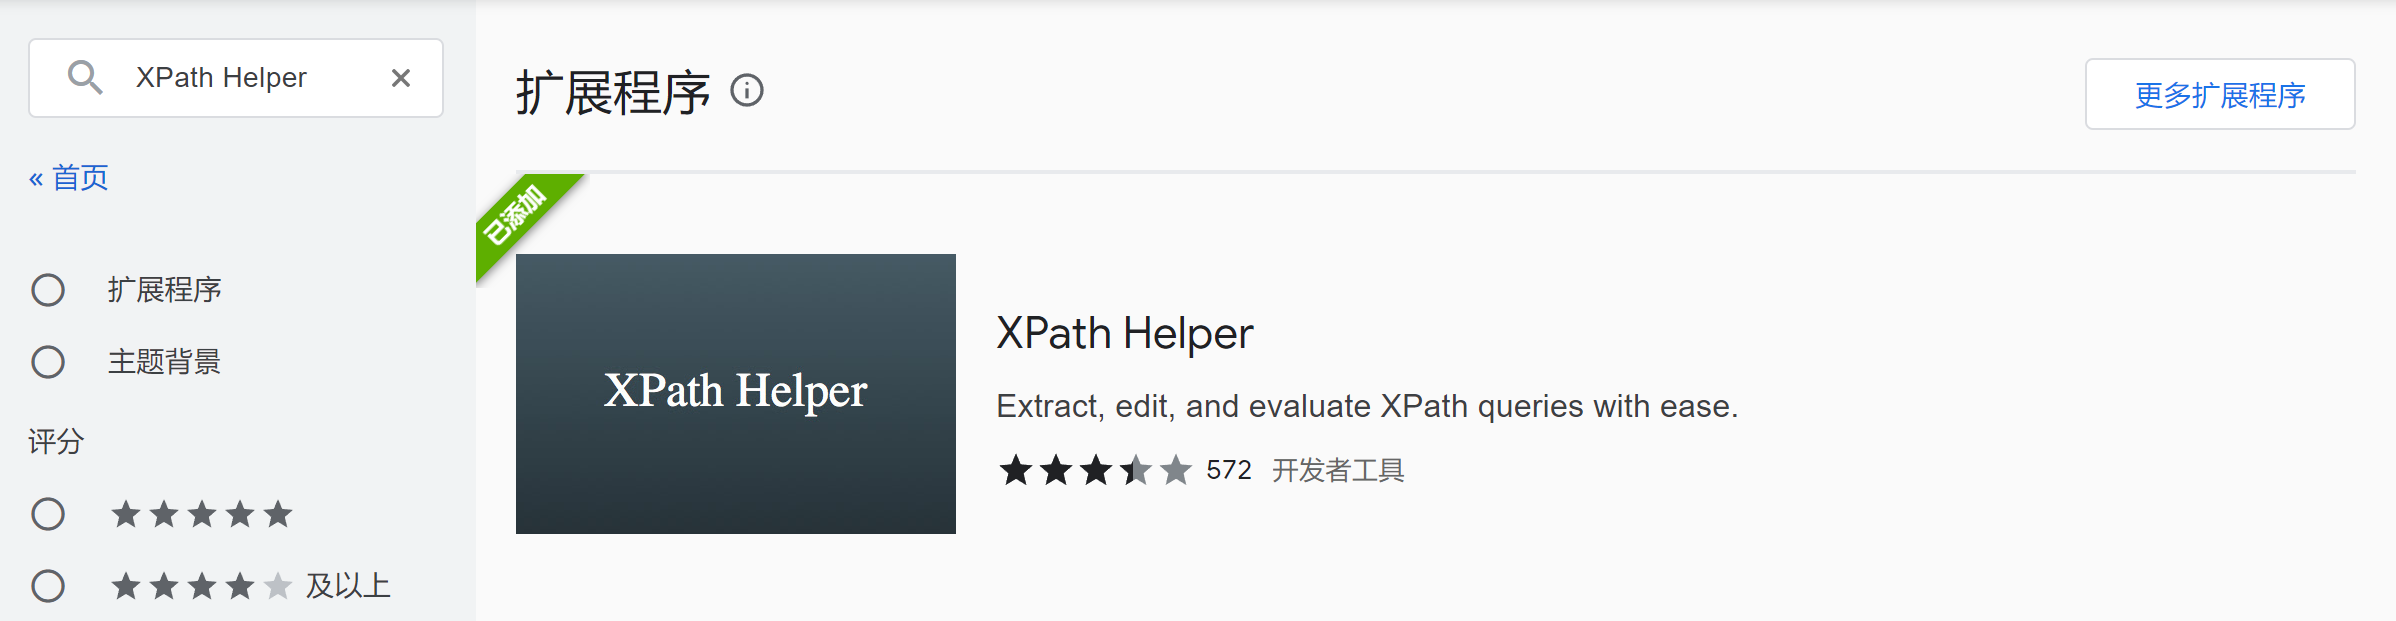 XPath数据提取与贴吧爬虫应用示例